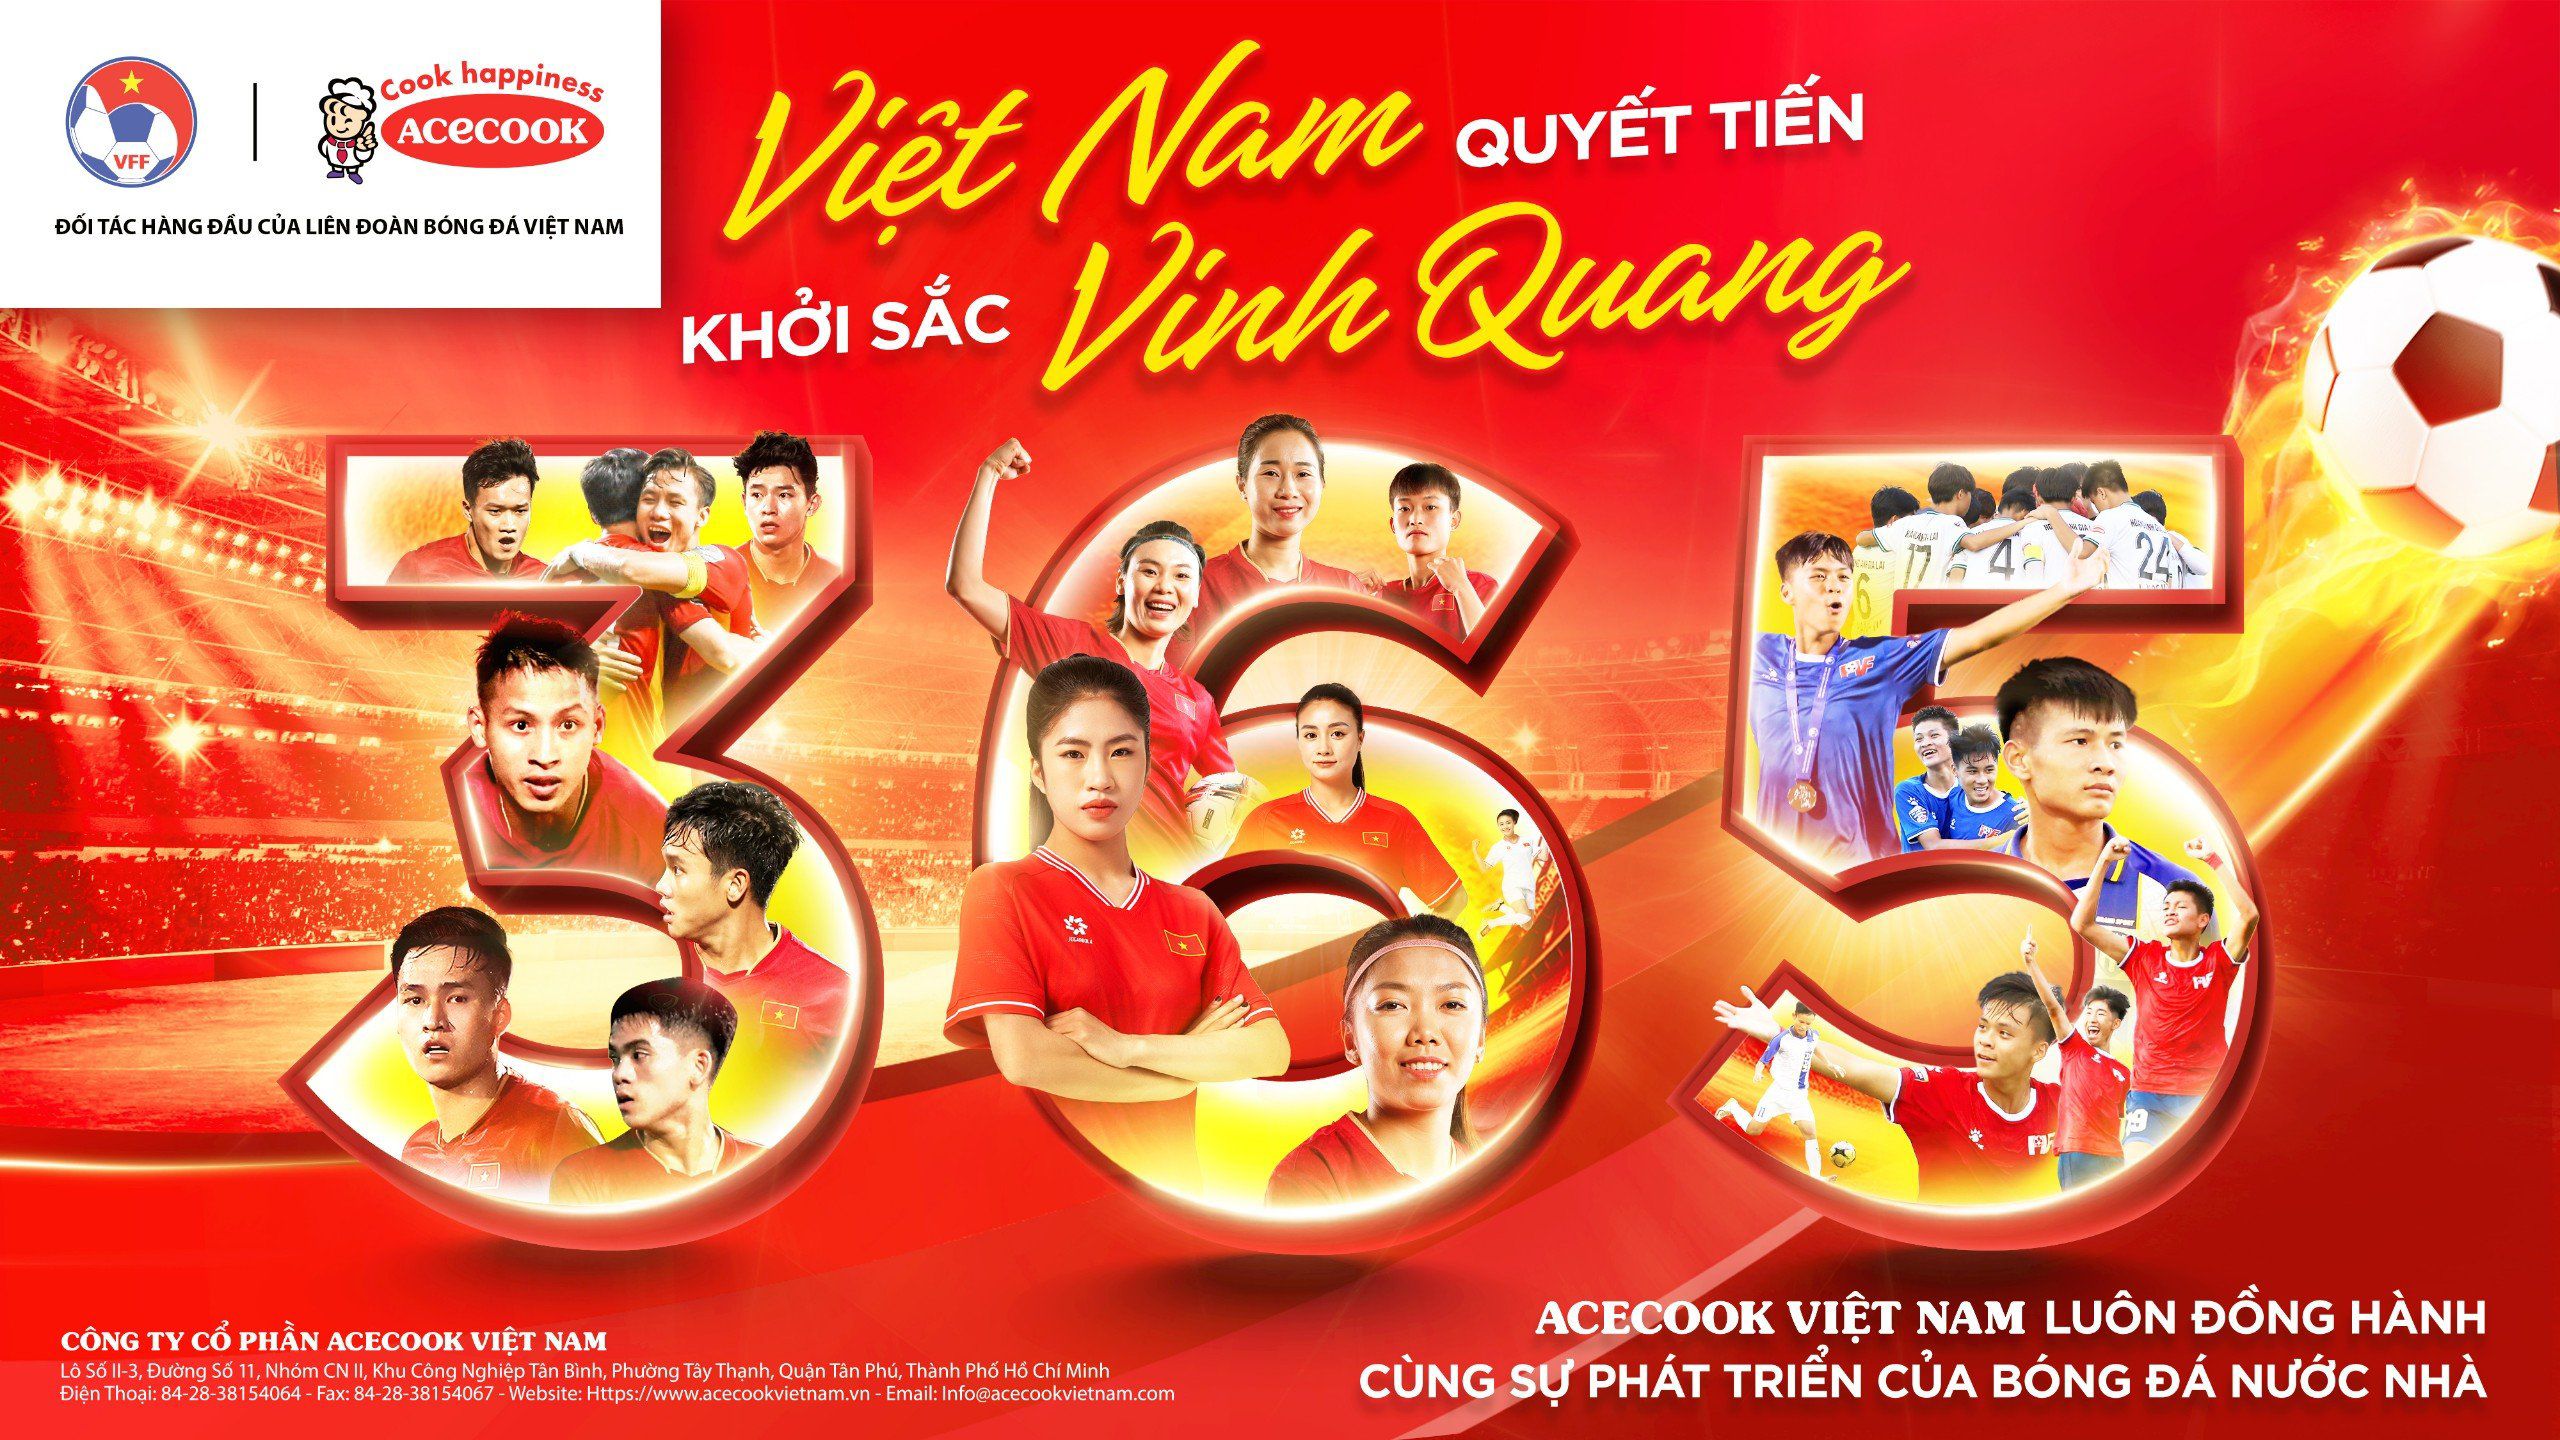 Acecook Việt Nam luôn đồng hành cùng sự phát triển của bóng đá nước nhà. Ảnh: Acecook Việt Nam